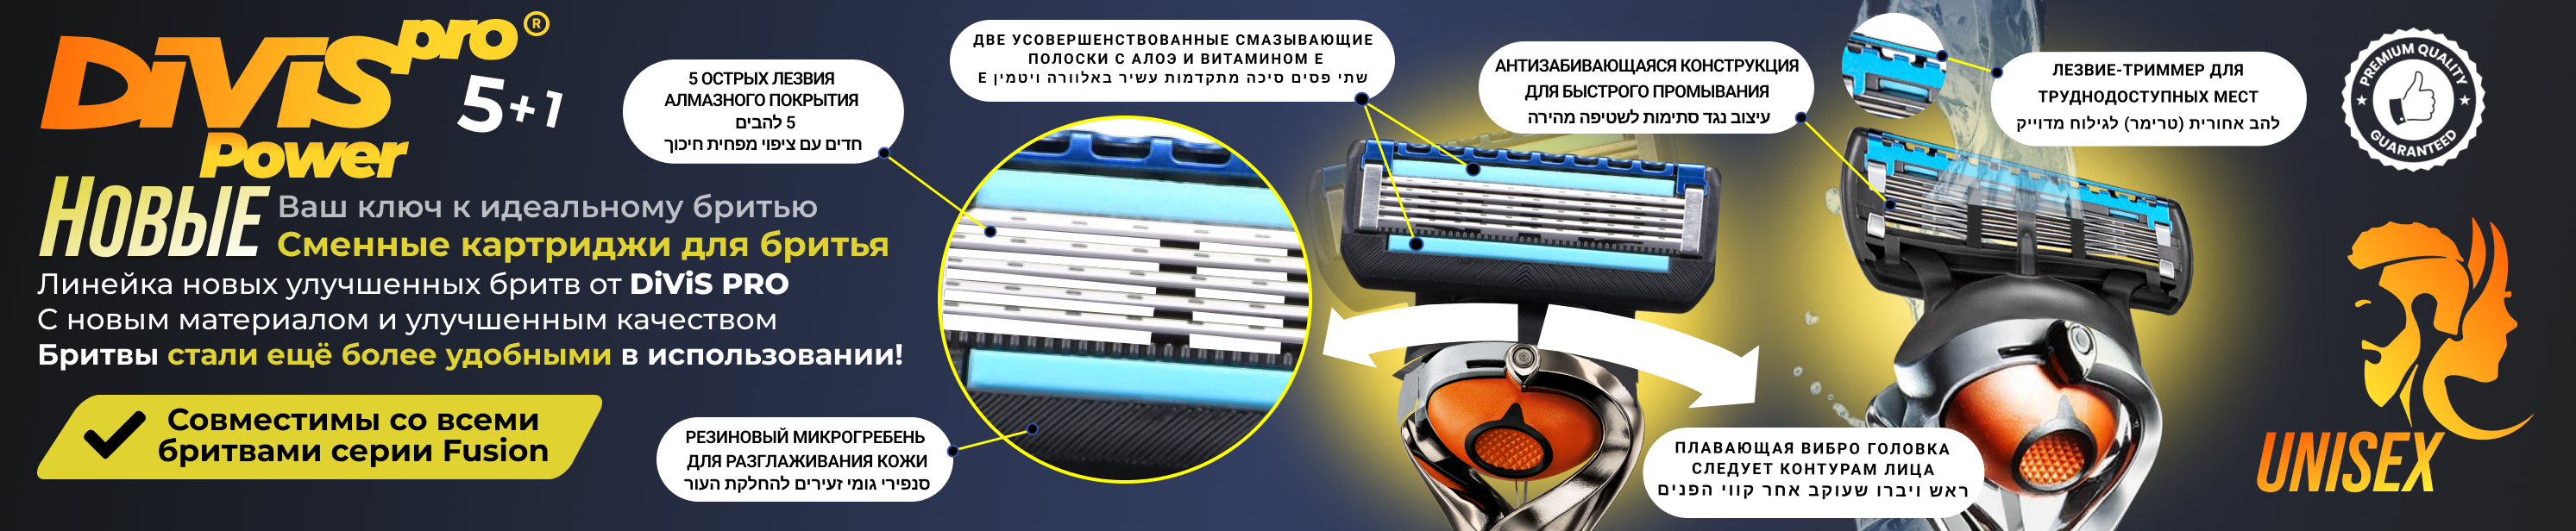 DIVIS PRO - это производитель высококачественных товаров для ухода за собой и личной гигиены - Город Солнечногорск DivisPro Power5+1-banner-head-4.png